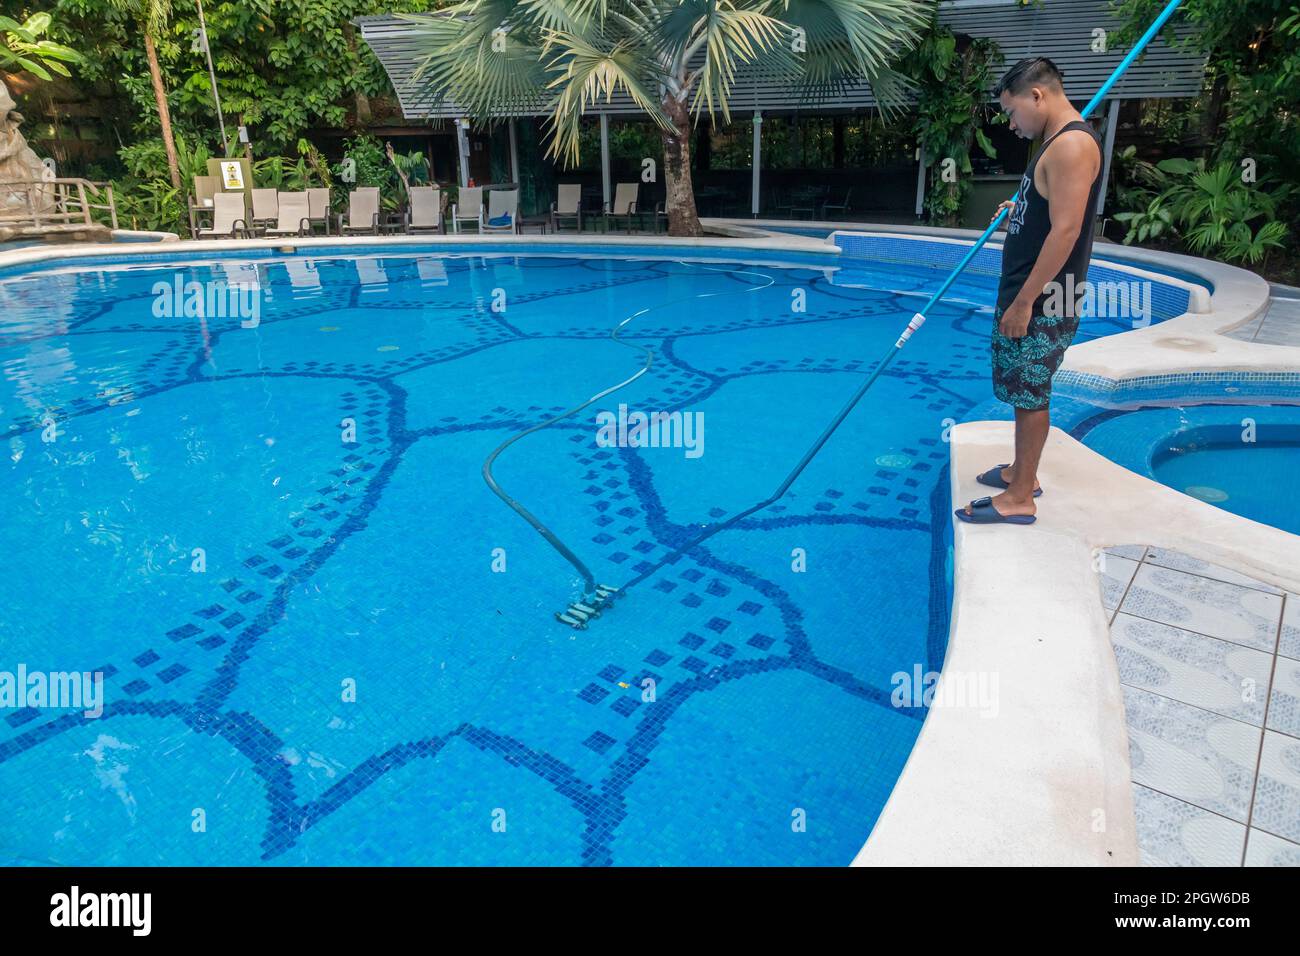 Tortuguero-Nationalpark, Costa Rica - Ein Mitarbeiter reinigt den Swimmingpool in der Evergreen Lodge, einem Hotel im Küstenregenwald. Stockfoto